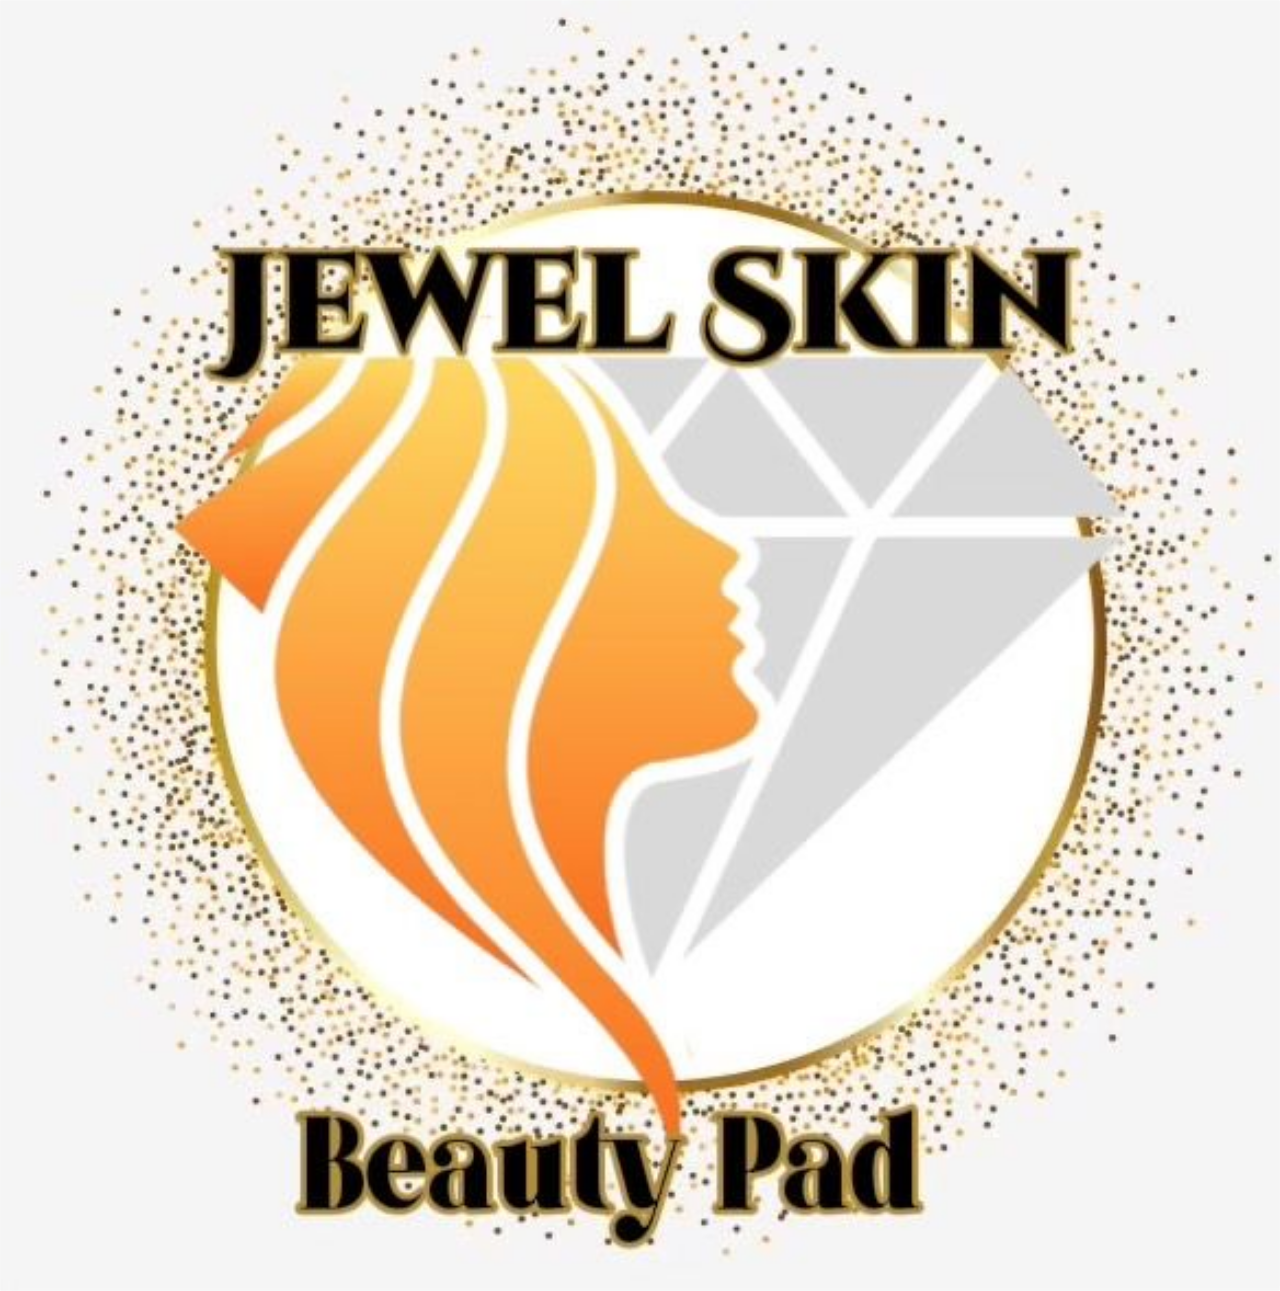 Aesthetic Beauty Pad's logo